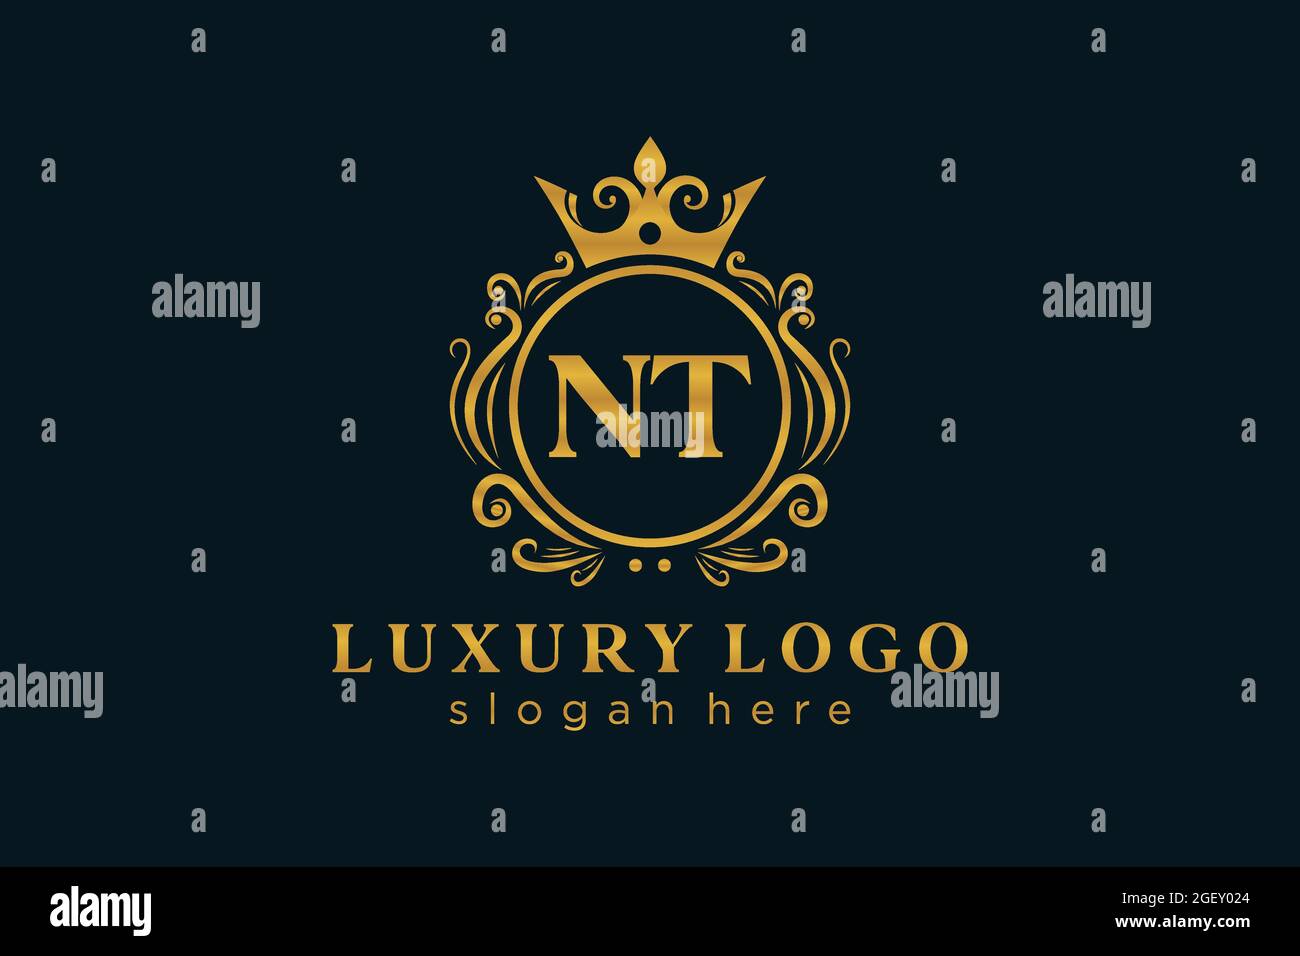 NT Letter Royal Luxury Logo Vorlage in Vektorgrafik für Restaurant, Royalty, Boutique, Cafe, Hotel, Heraldisch, Schmuck, Mode und andere Vektor illustrr Stock Vektor